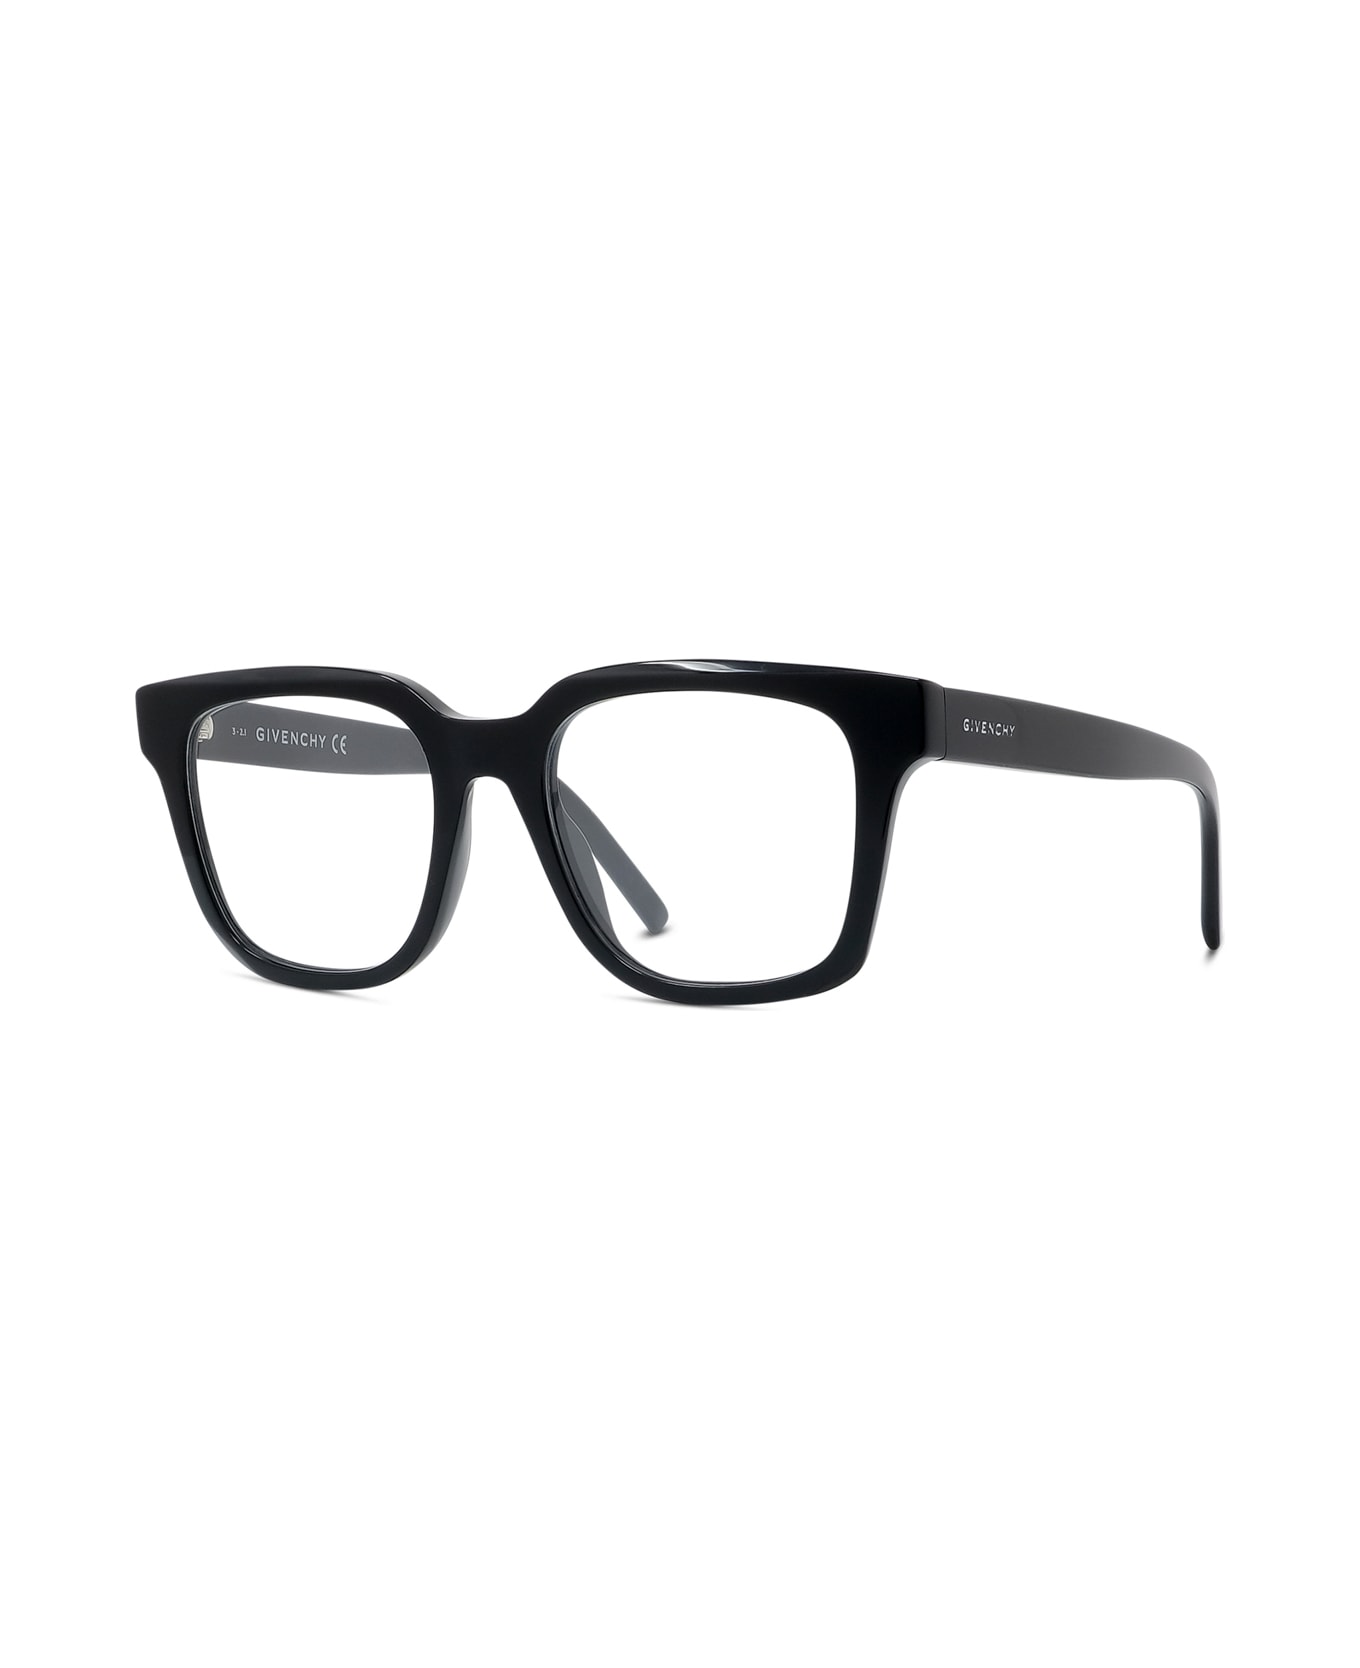 Givenchy Eyewear Gv50005i 001 Glasses アイウェア